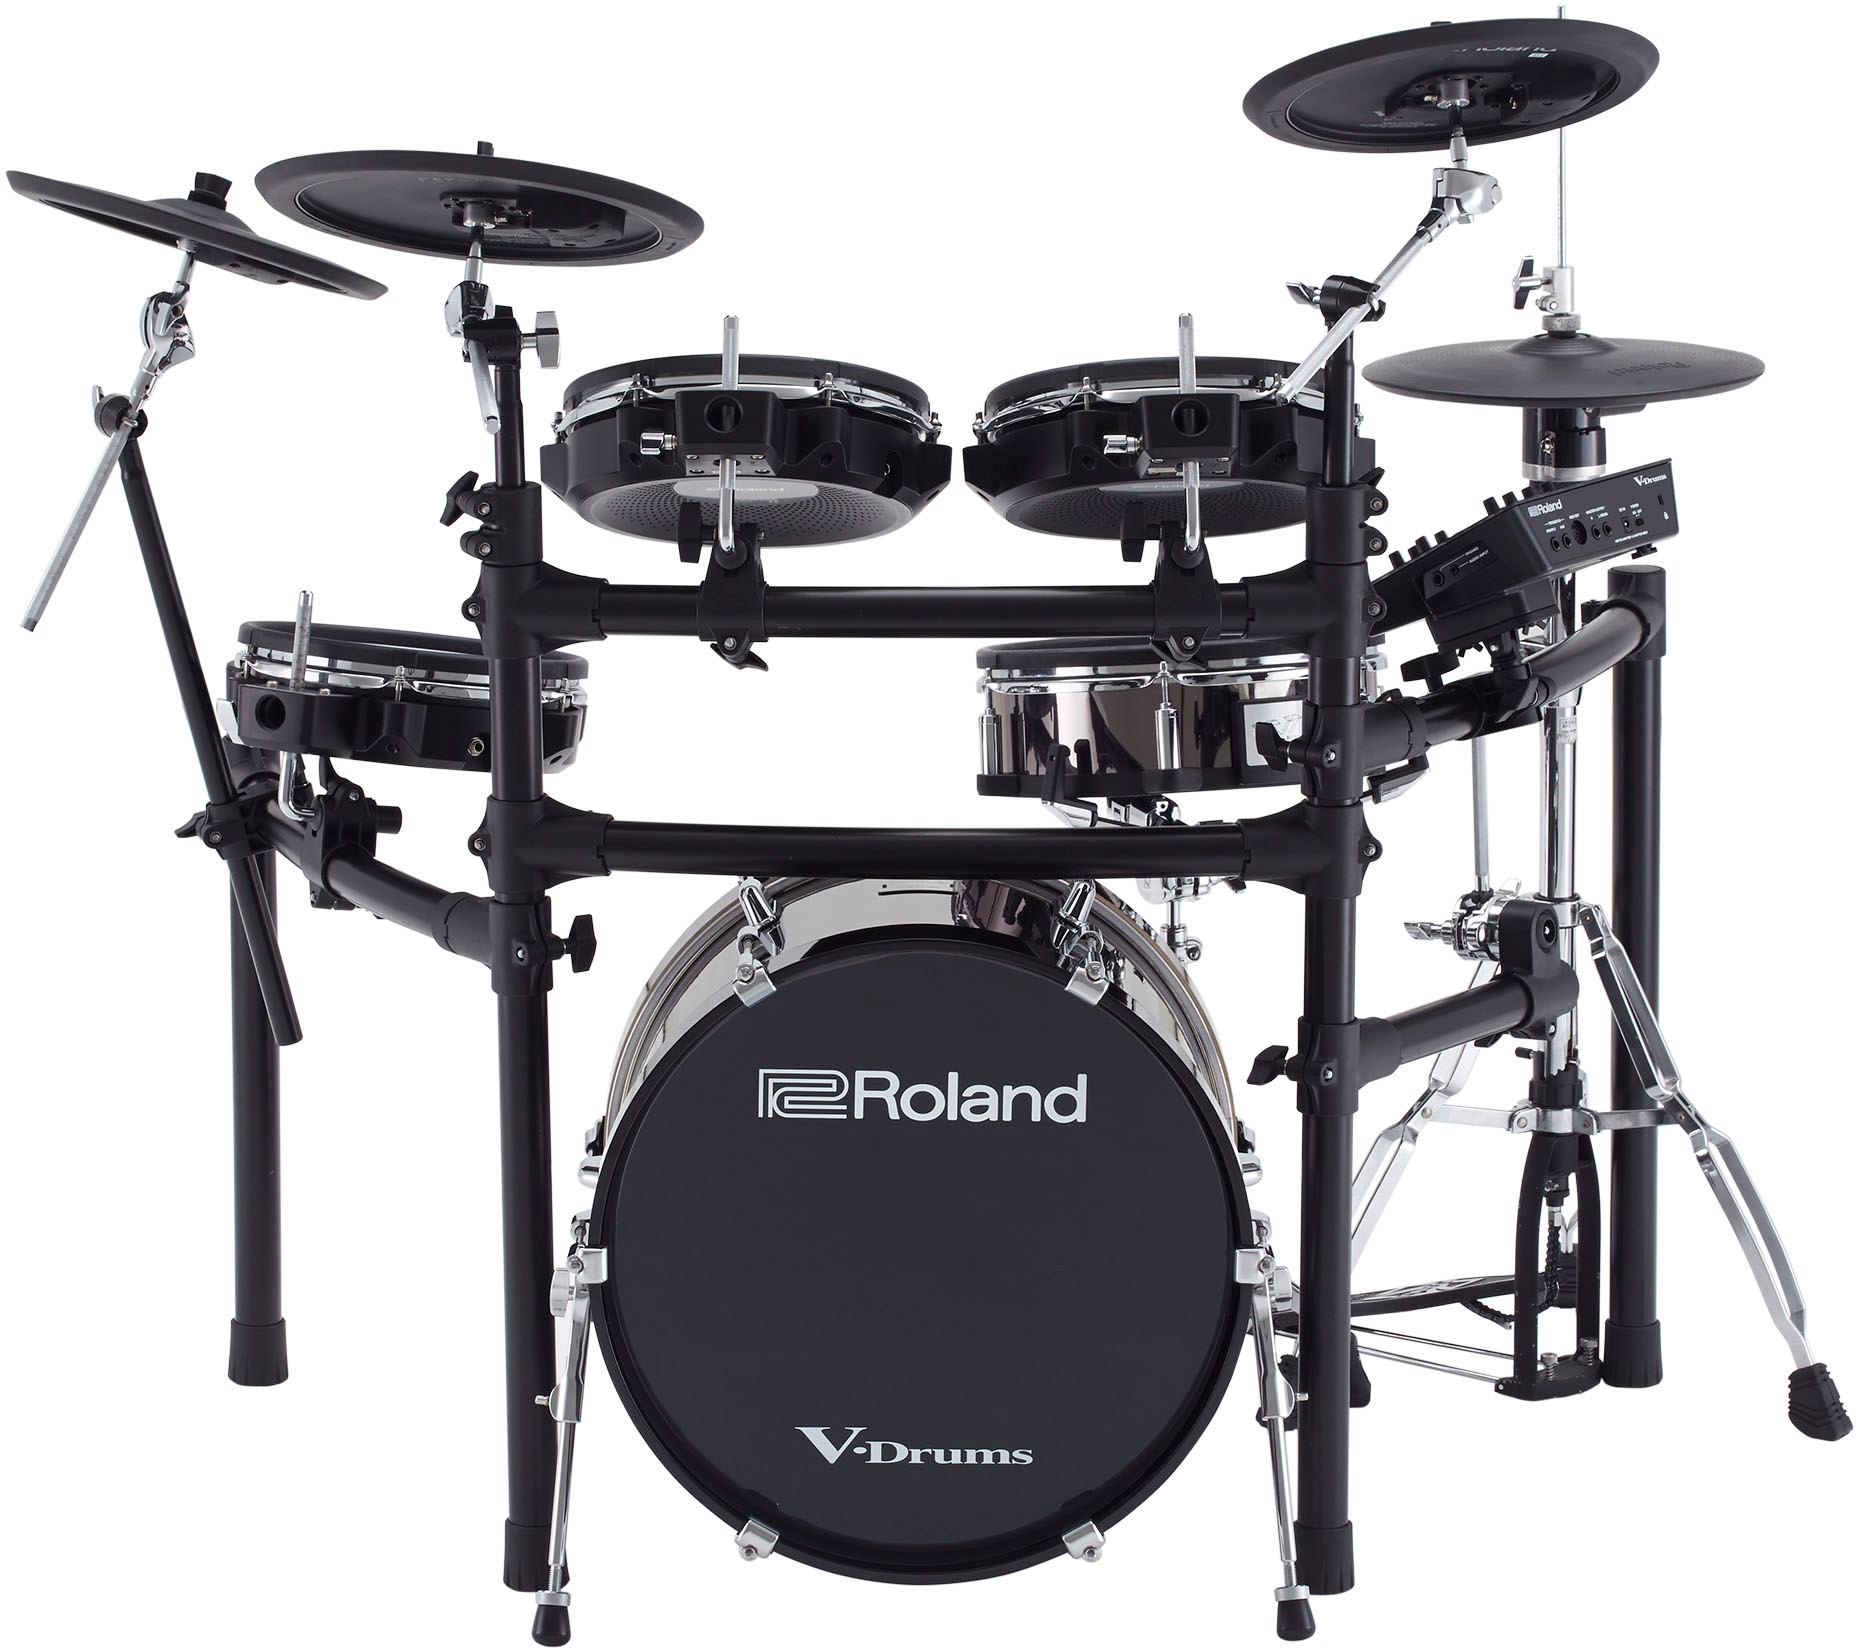 Roland Grosse Caisse V-drums Kd-180 - Electronic drum kit & set - Variation 3